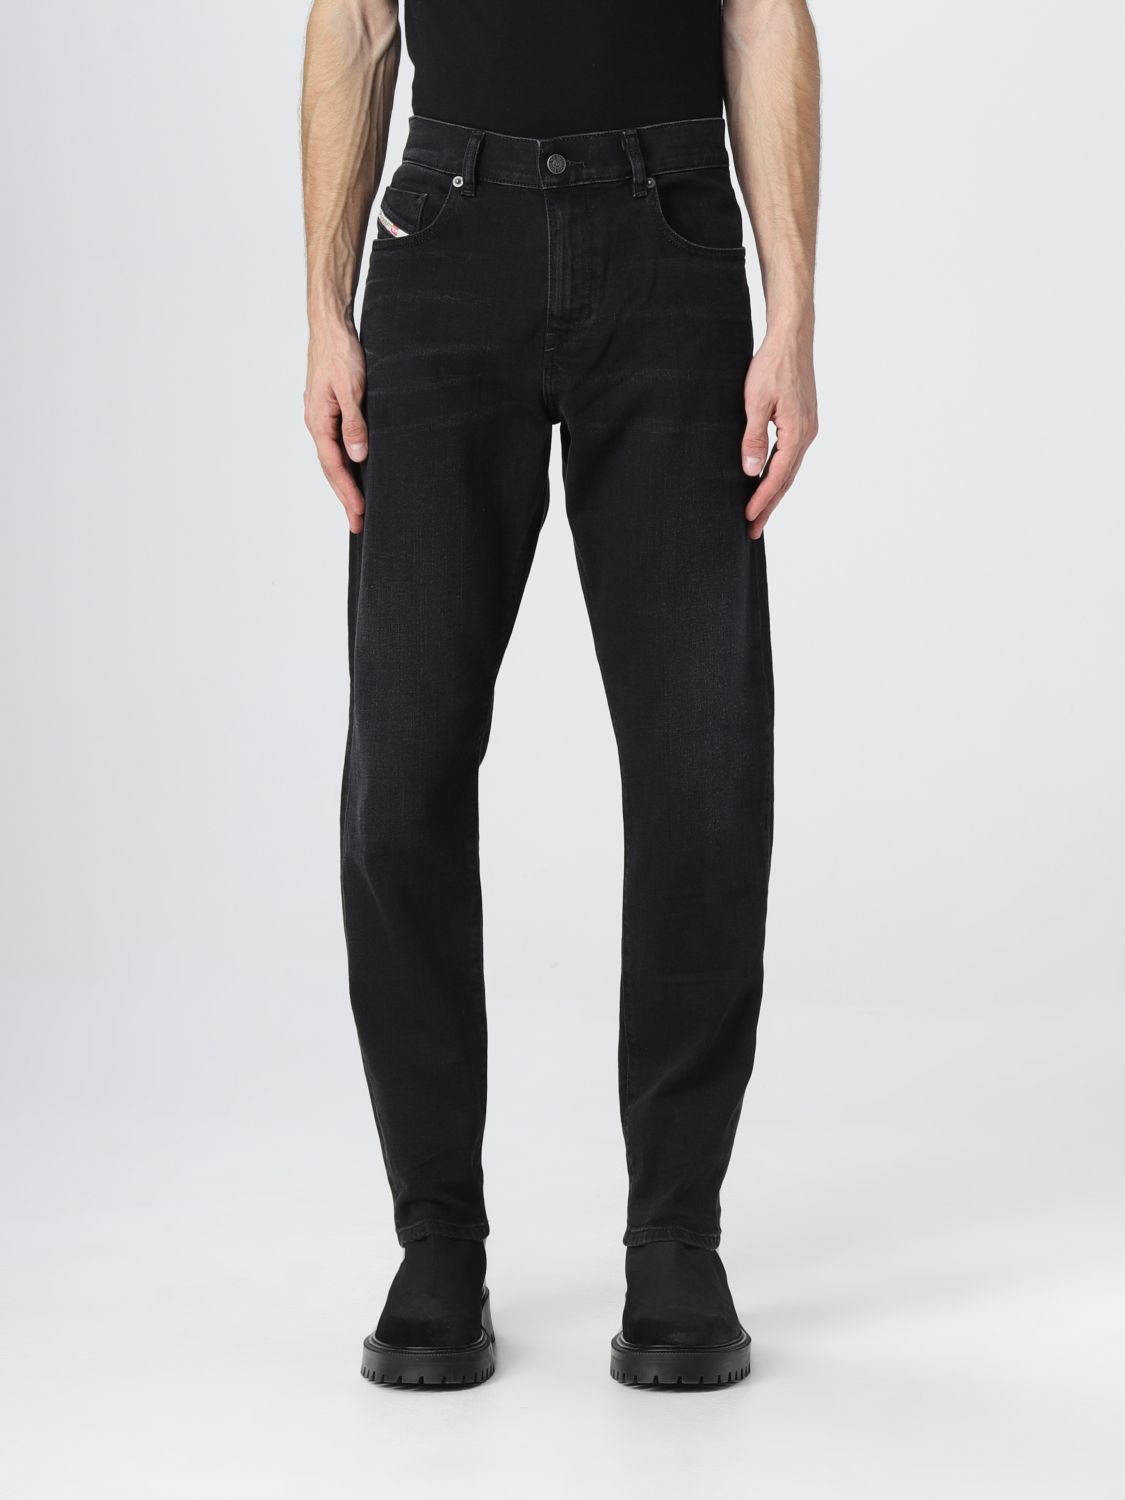 hoorbaar Fonkeling Populair Diesel Outlet: jeans for man - Black | Diesel jeans A0356209D48 online on  GIGLIO.COM